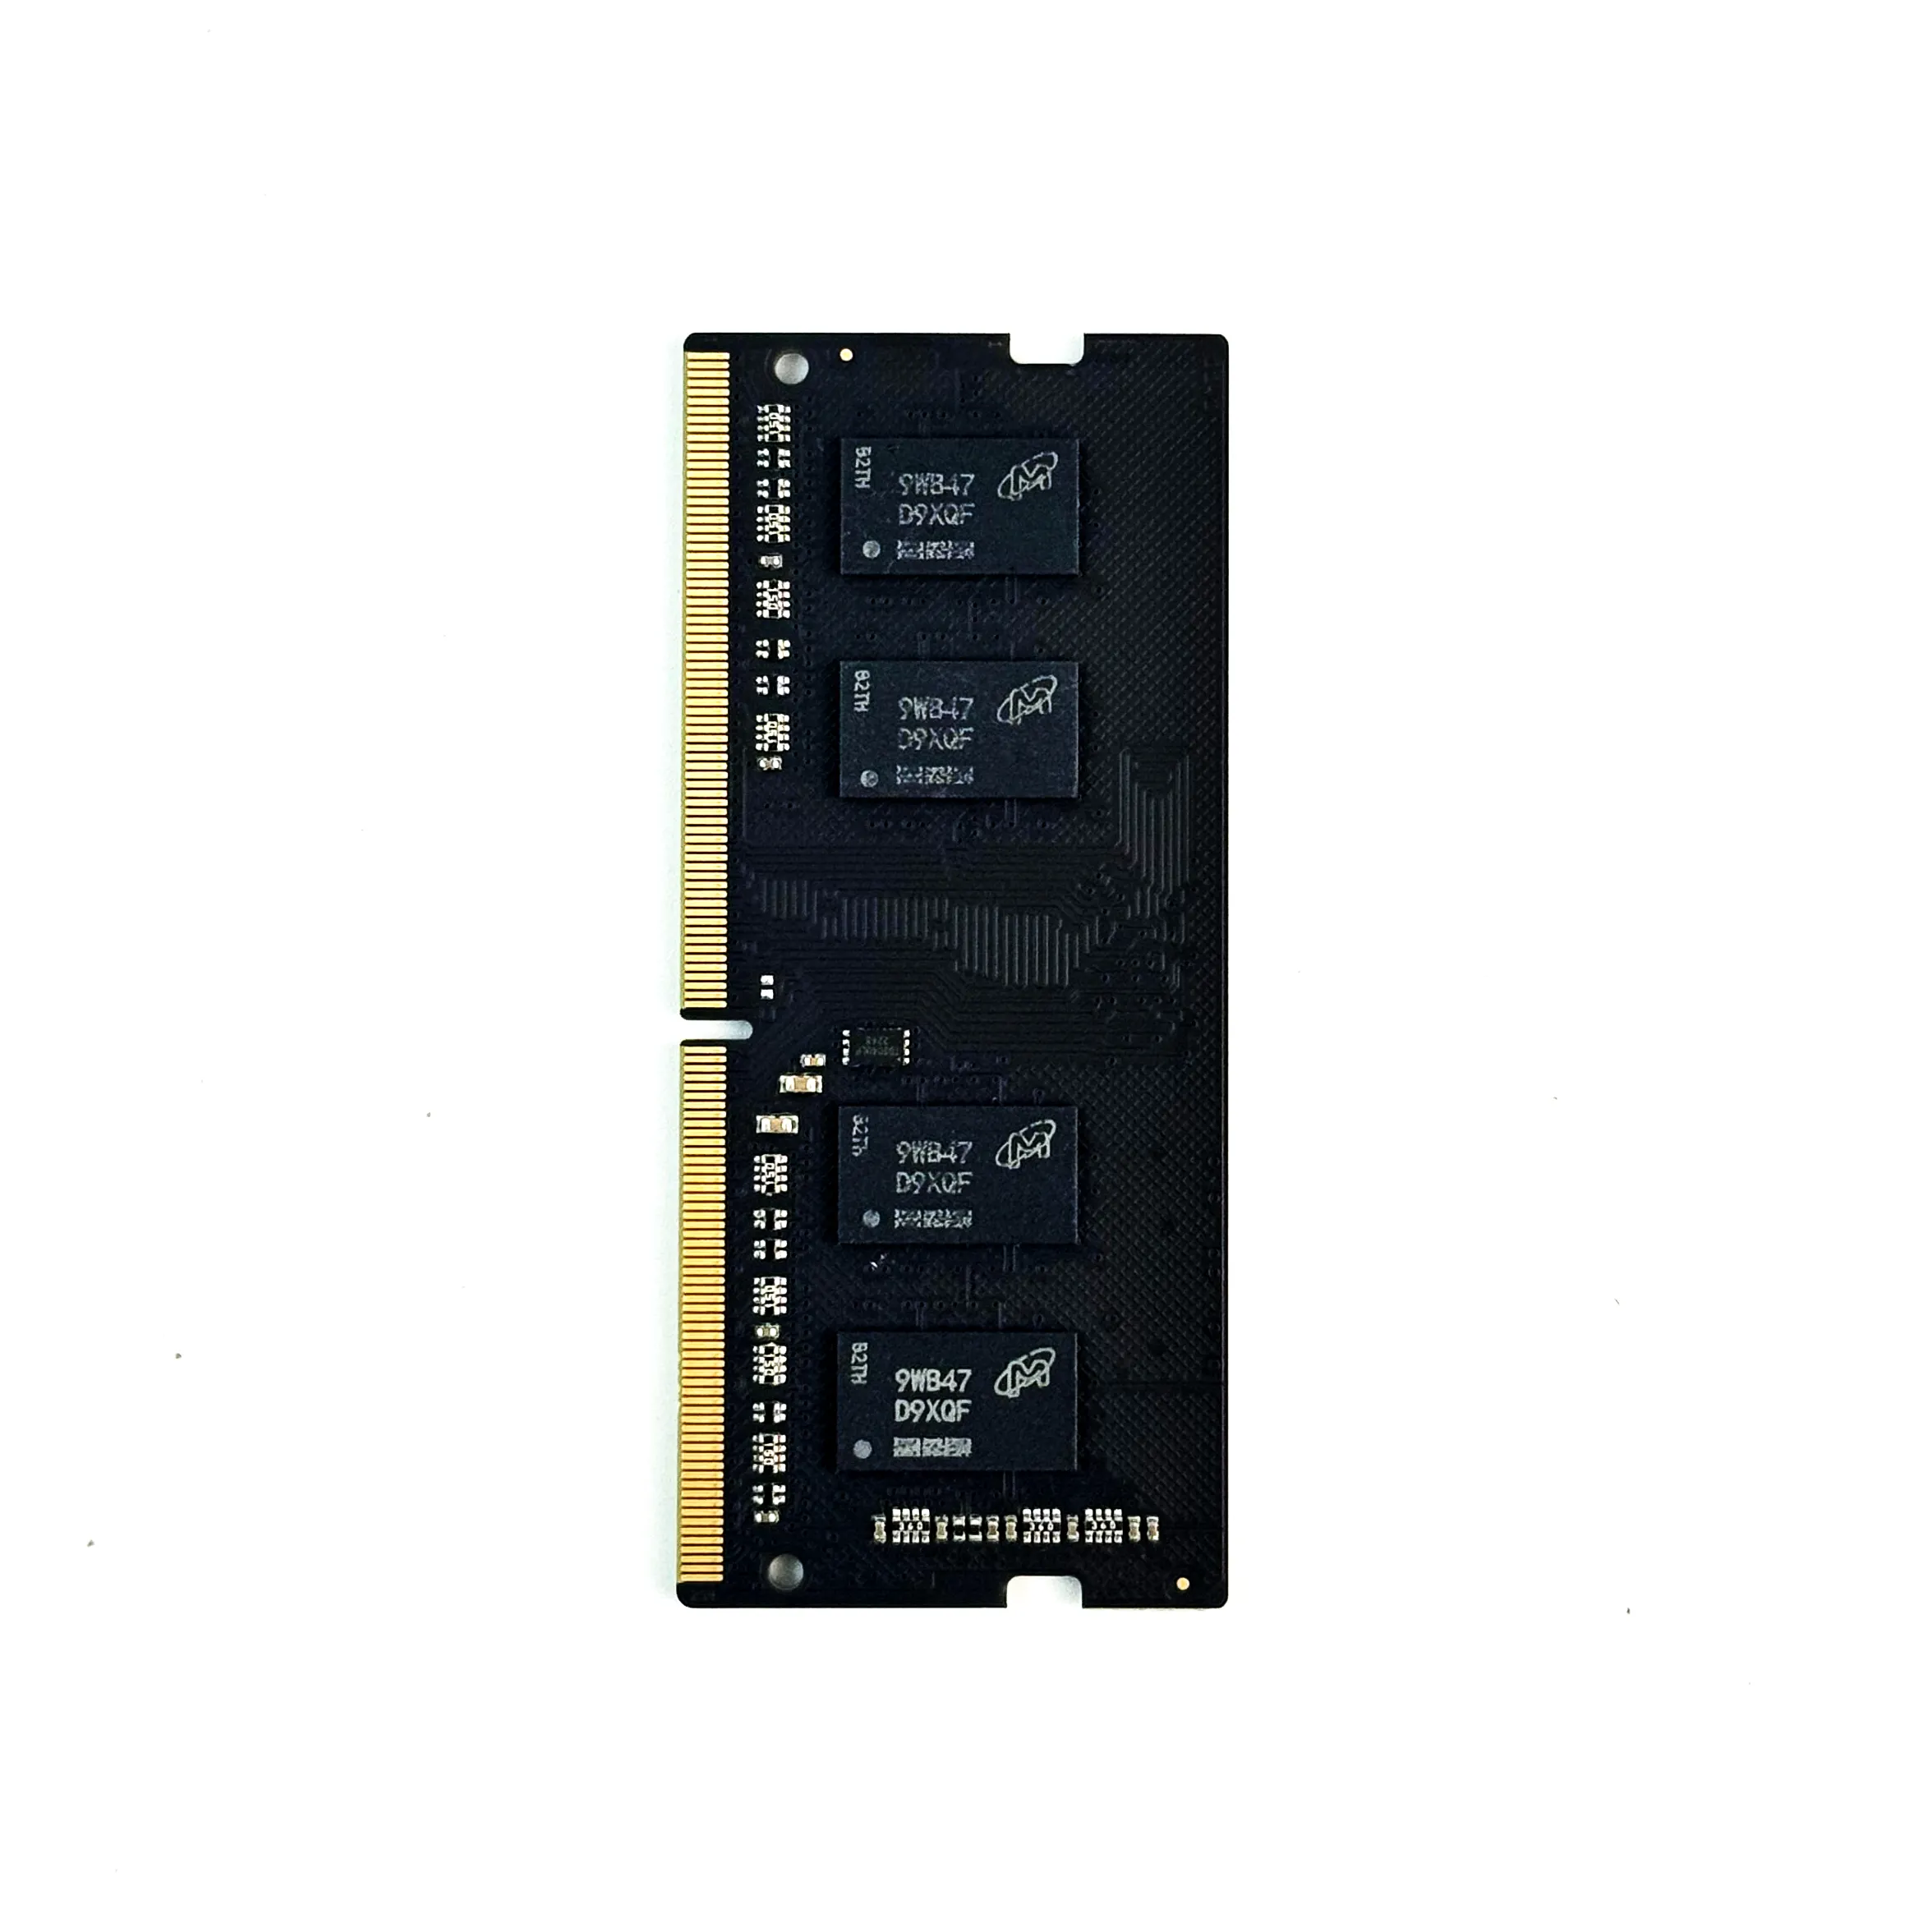 DDR3-NB 1333MHz/1600MHz memoria DDR3 4GB per notebook